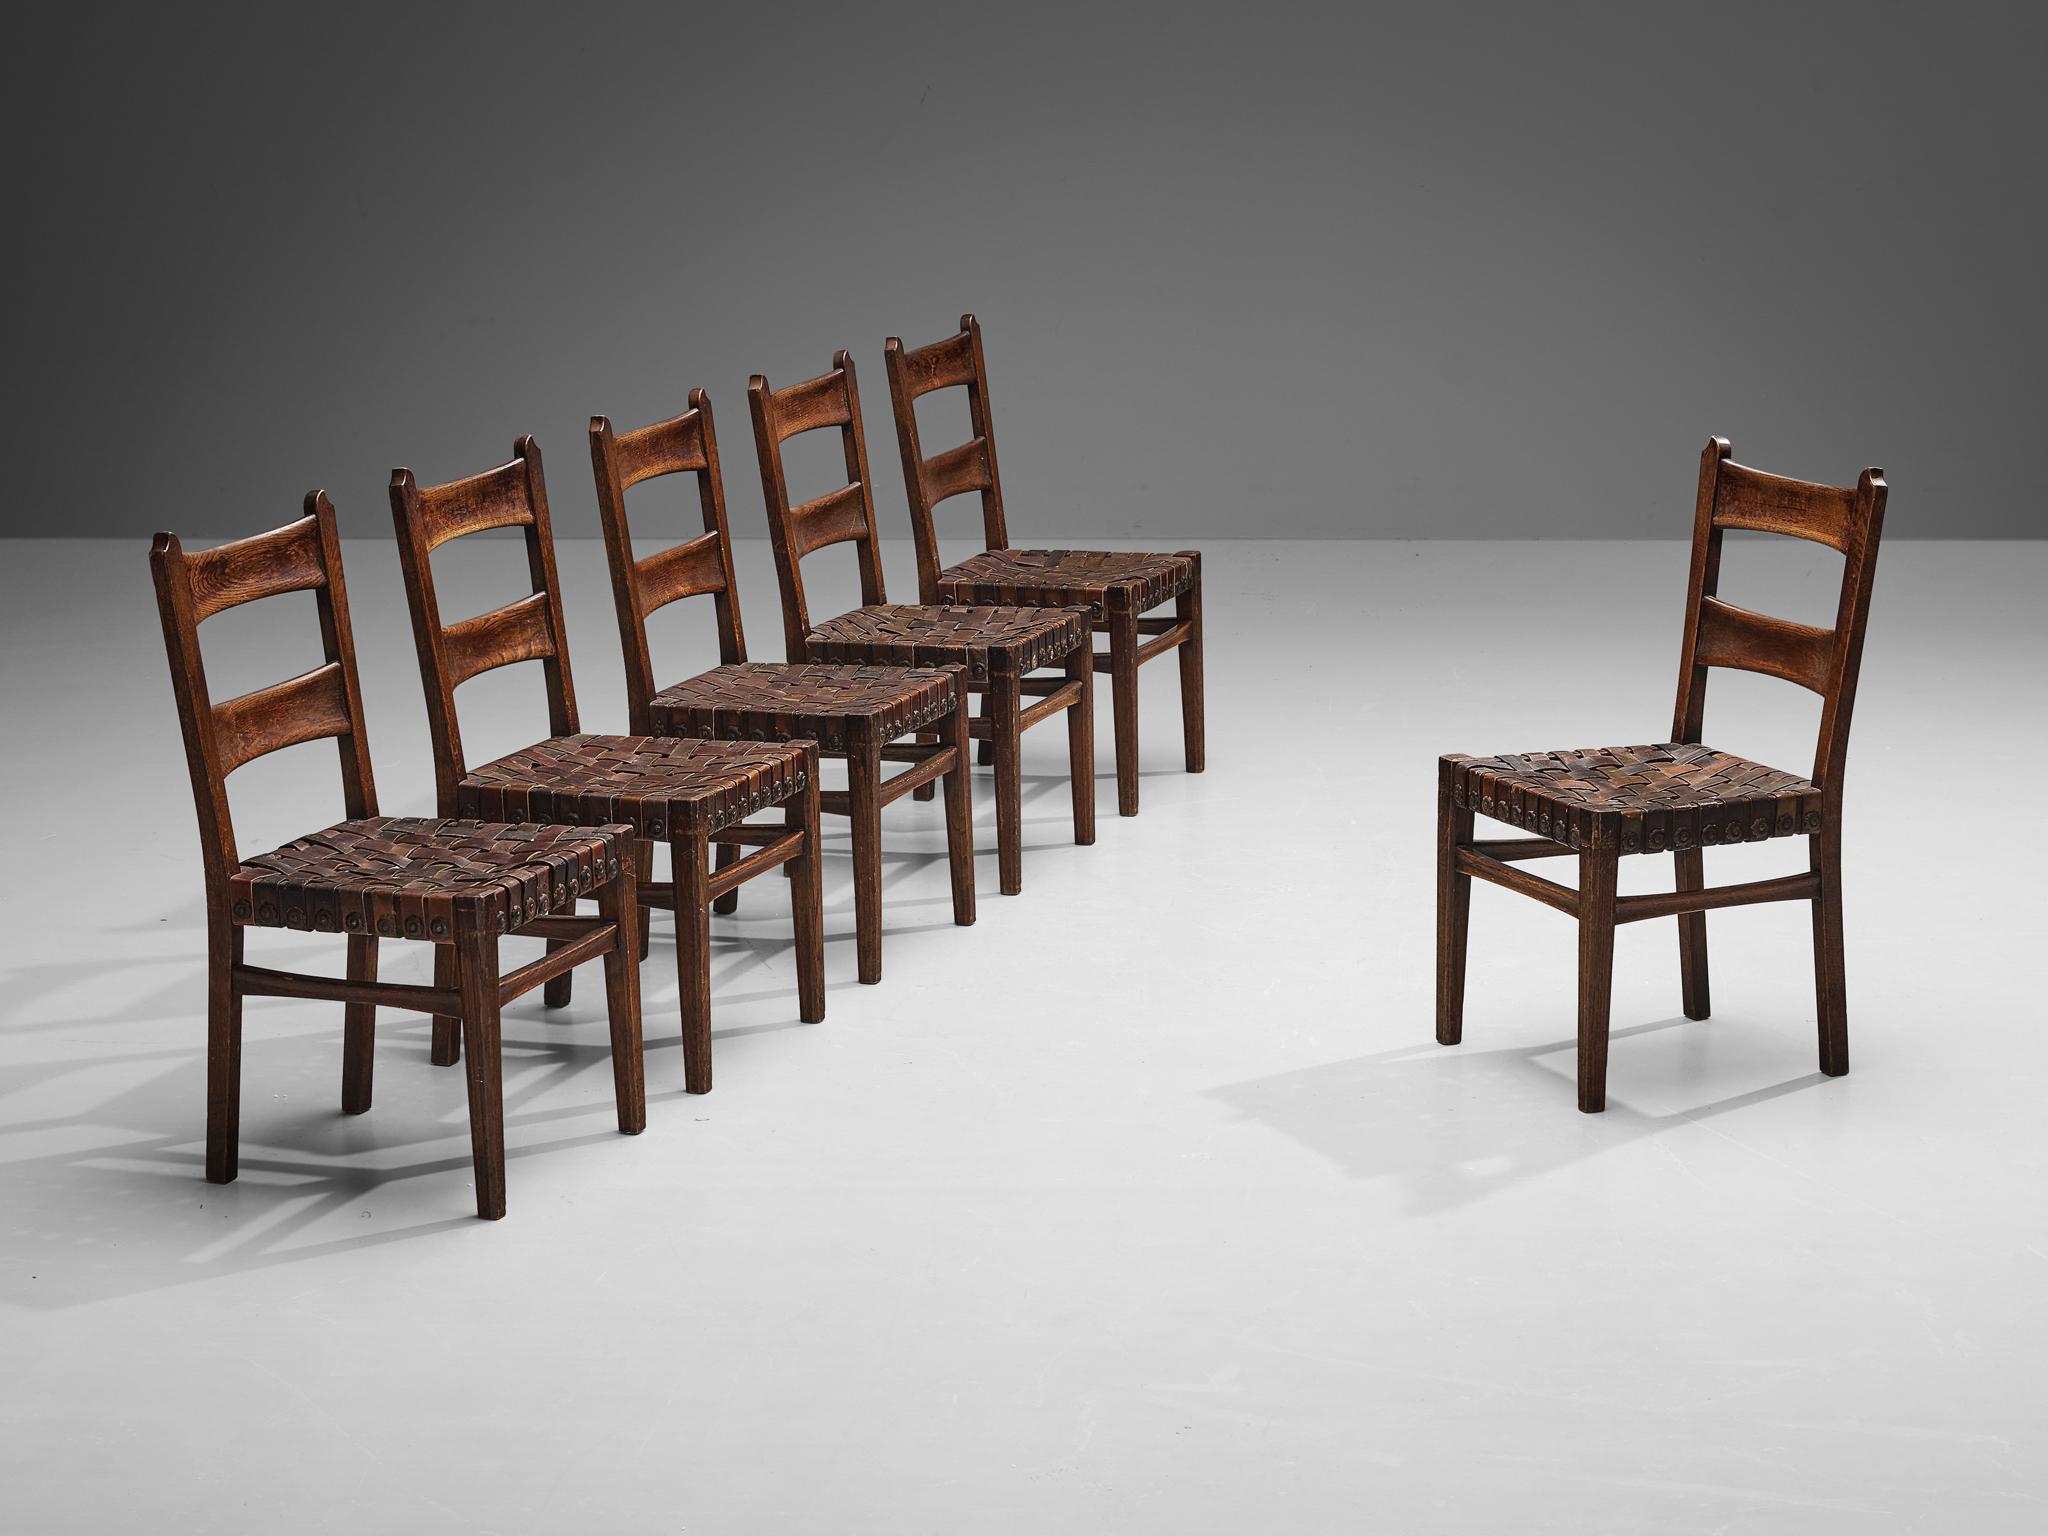 Ernesto Valabrega, ensemble de six chaises de salle à manger, chêne, cuir, métal, Italie, années 1930

Ces chaises bien sculptées ont été conçues par le maître italien de l'Art déco, Ernesto Valabrega. Les chaises reflètent clairement l'excellent